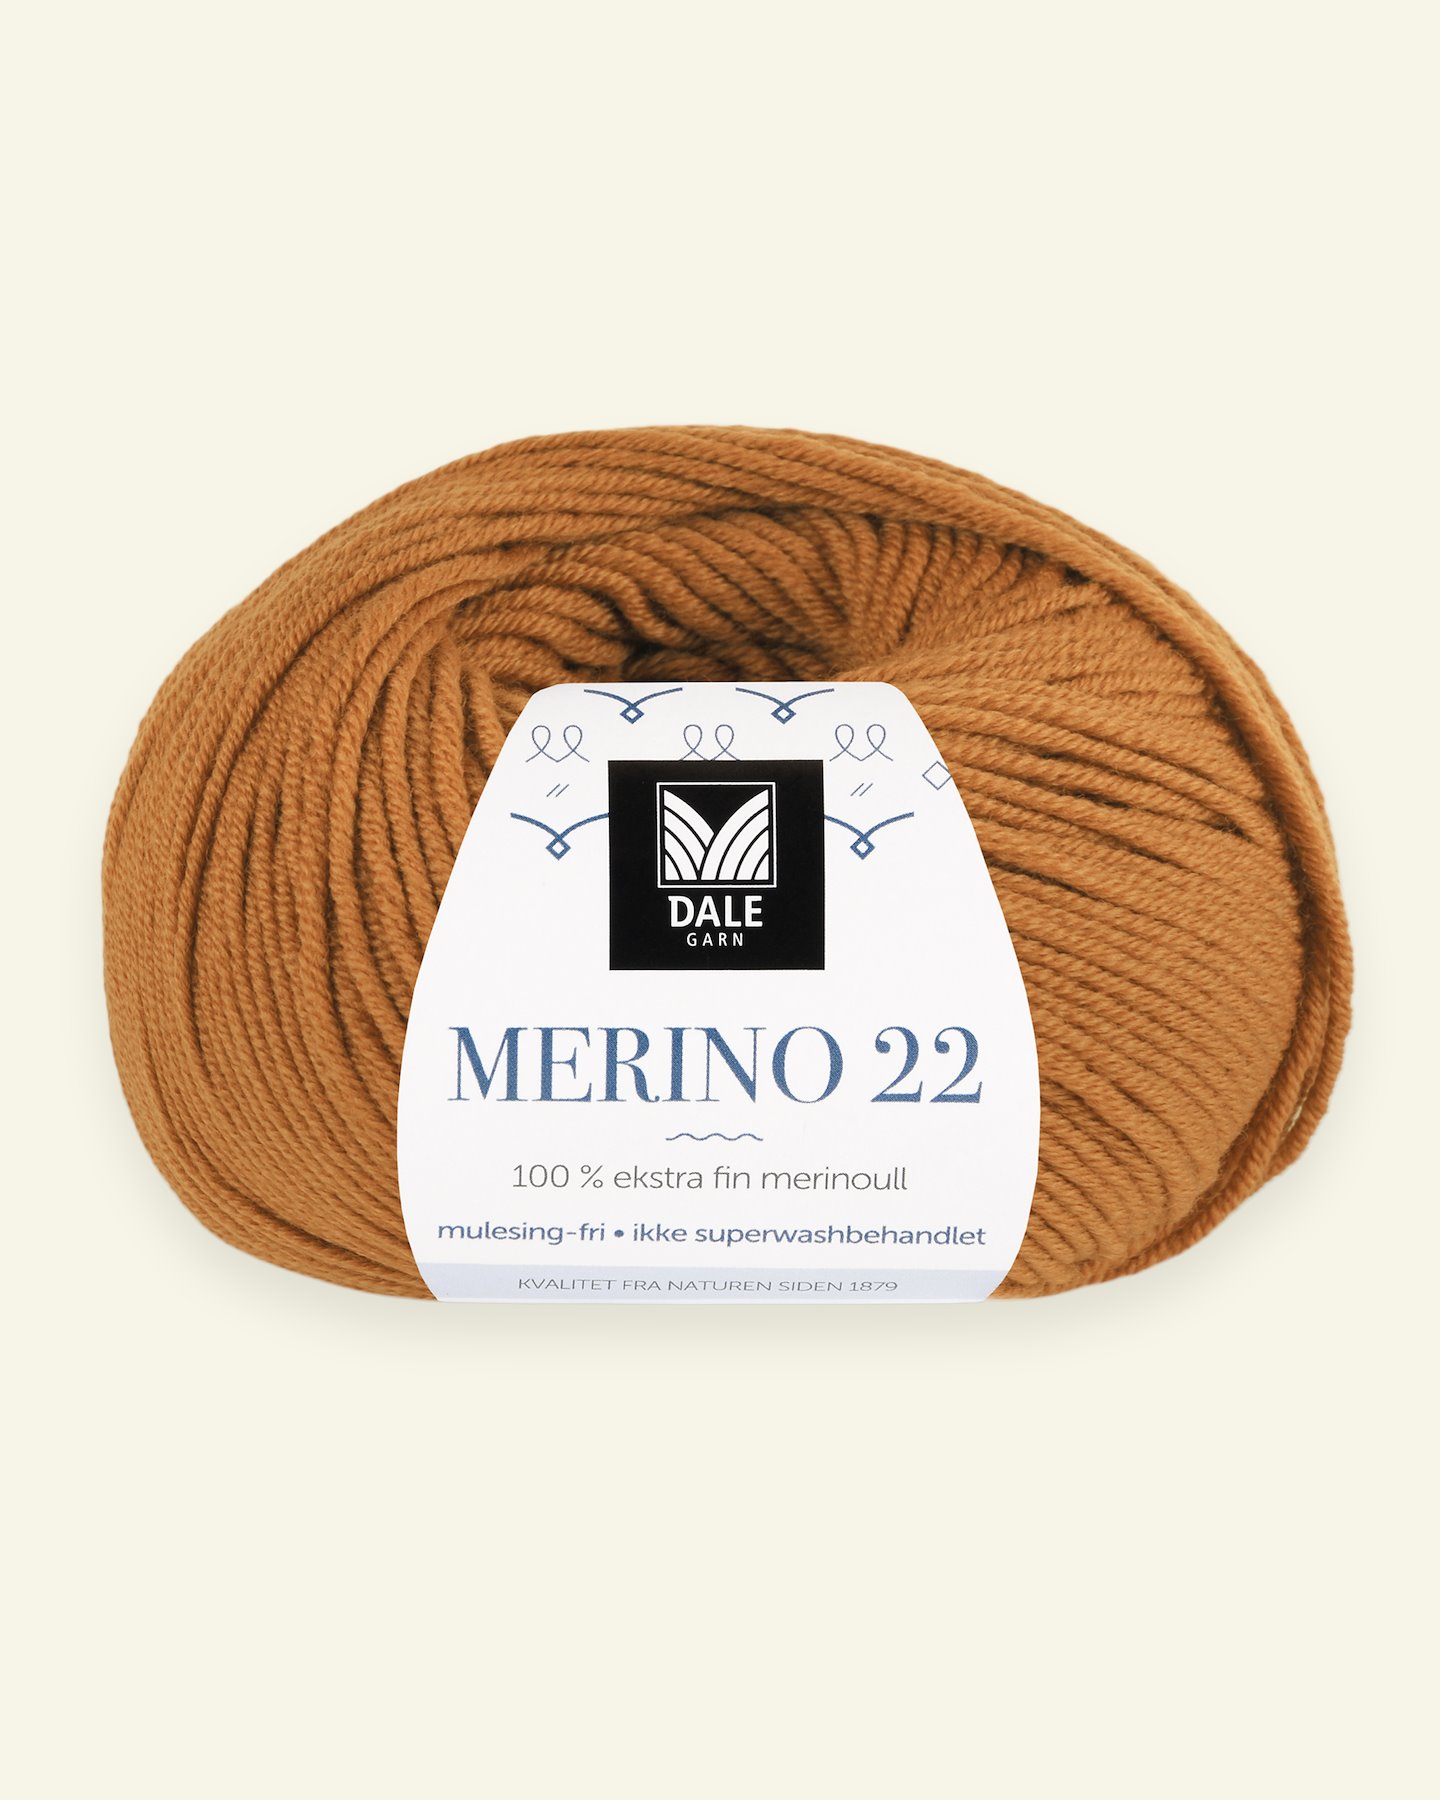 Dale Garn, 100% Extrafeine Merino-Wolle "Merino 22", gebr. orange (2019) 90000380_pack